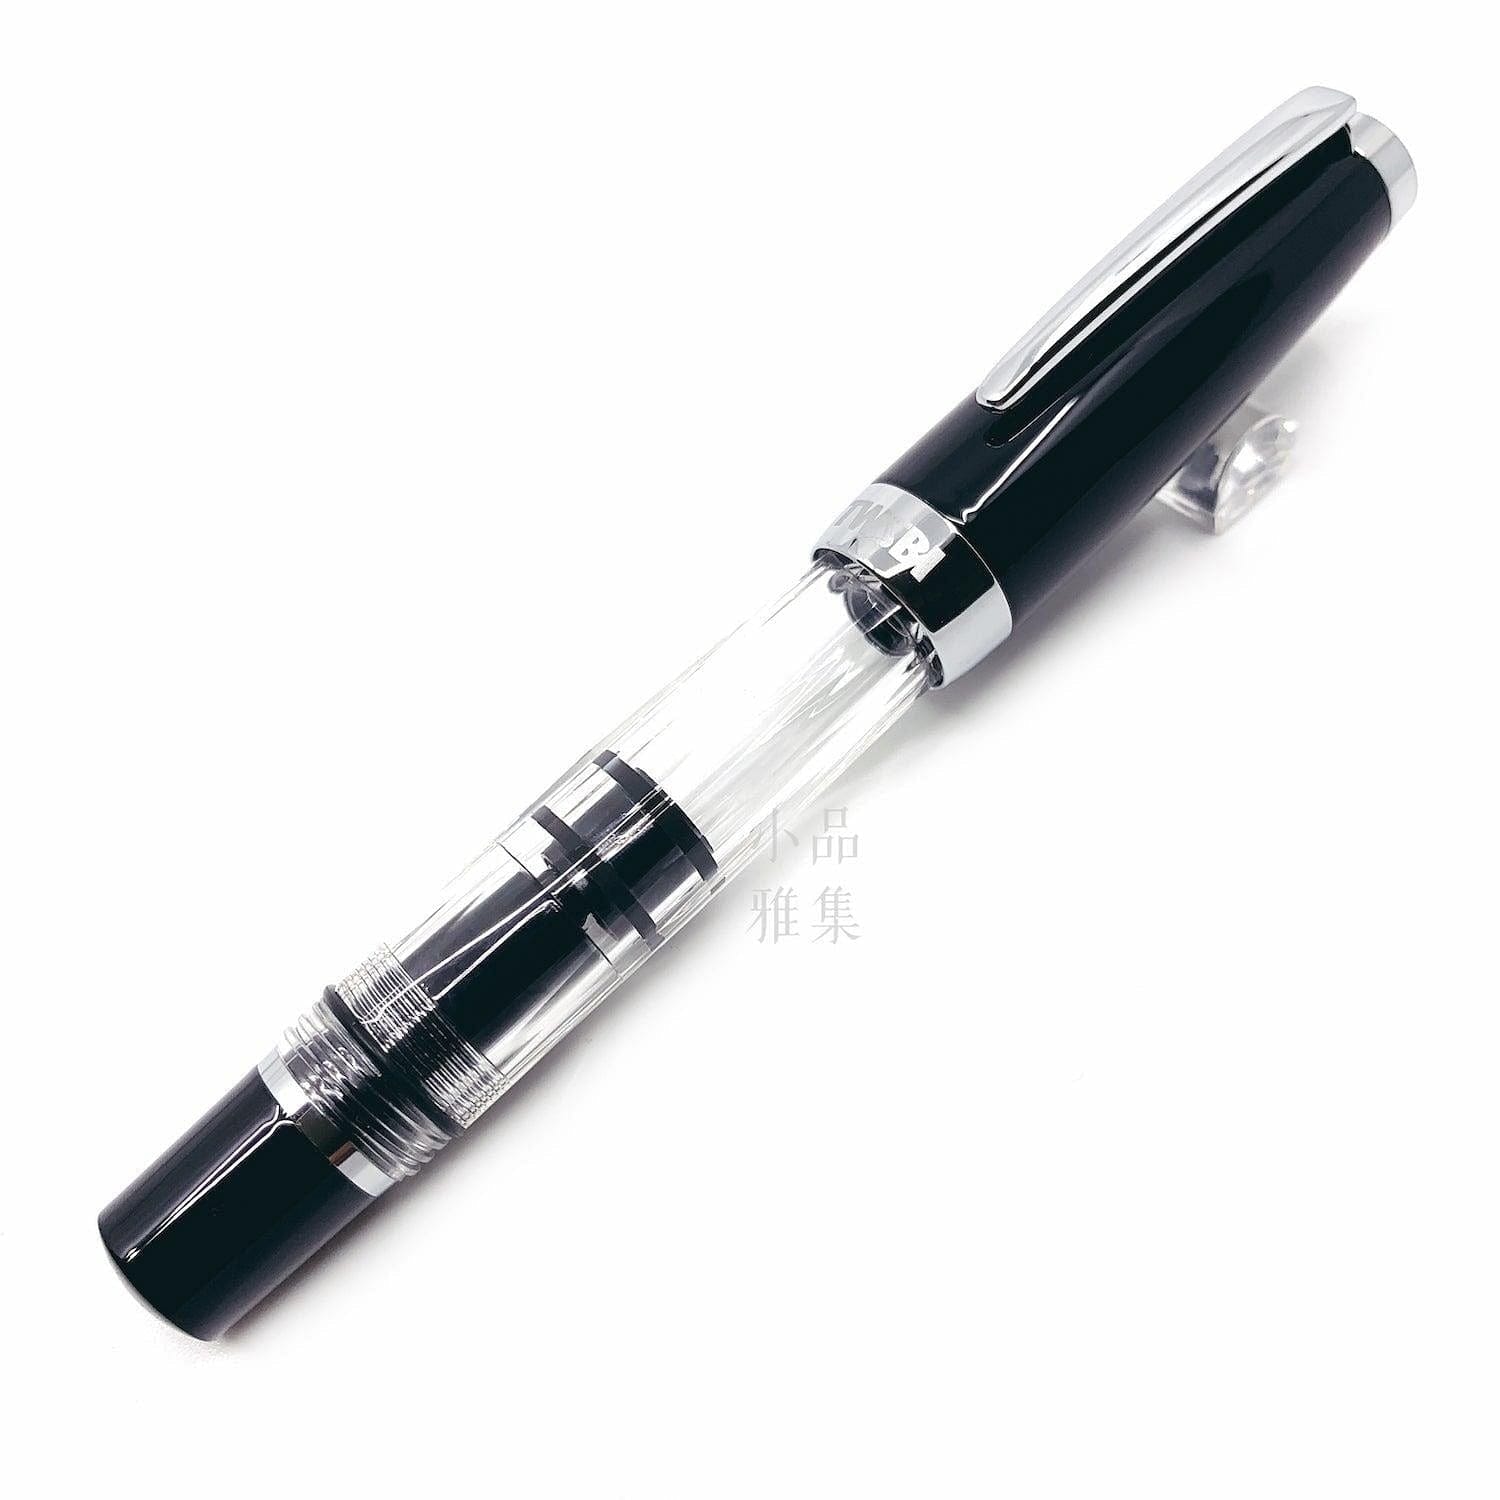  TWSBI Diamond Mini Classic Fountain Pen Stub1.1 nib : Stub Nib  : Office Products